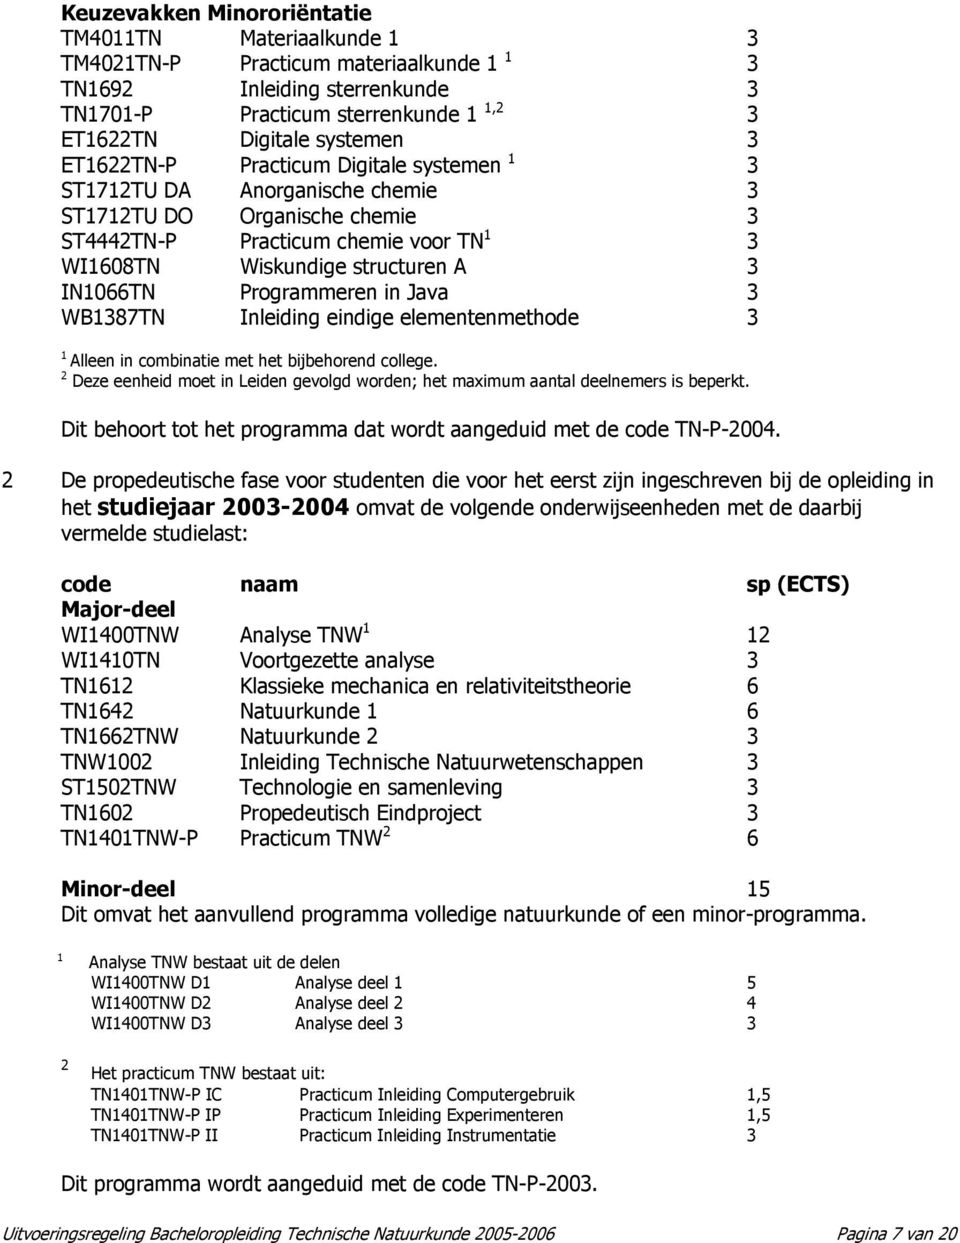 Programmeren in Java 3 WB1387TN Inleiding eindige elementenmethode 3 1 Alleen in combinatie met het bijbehorend college.